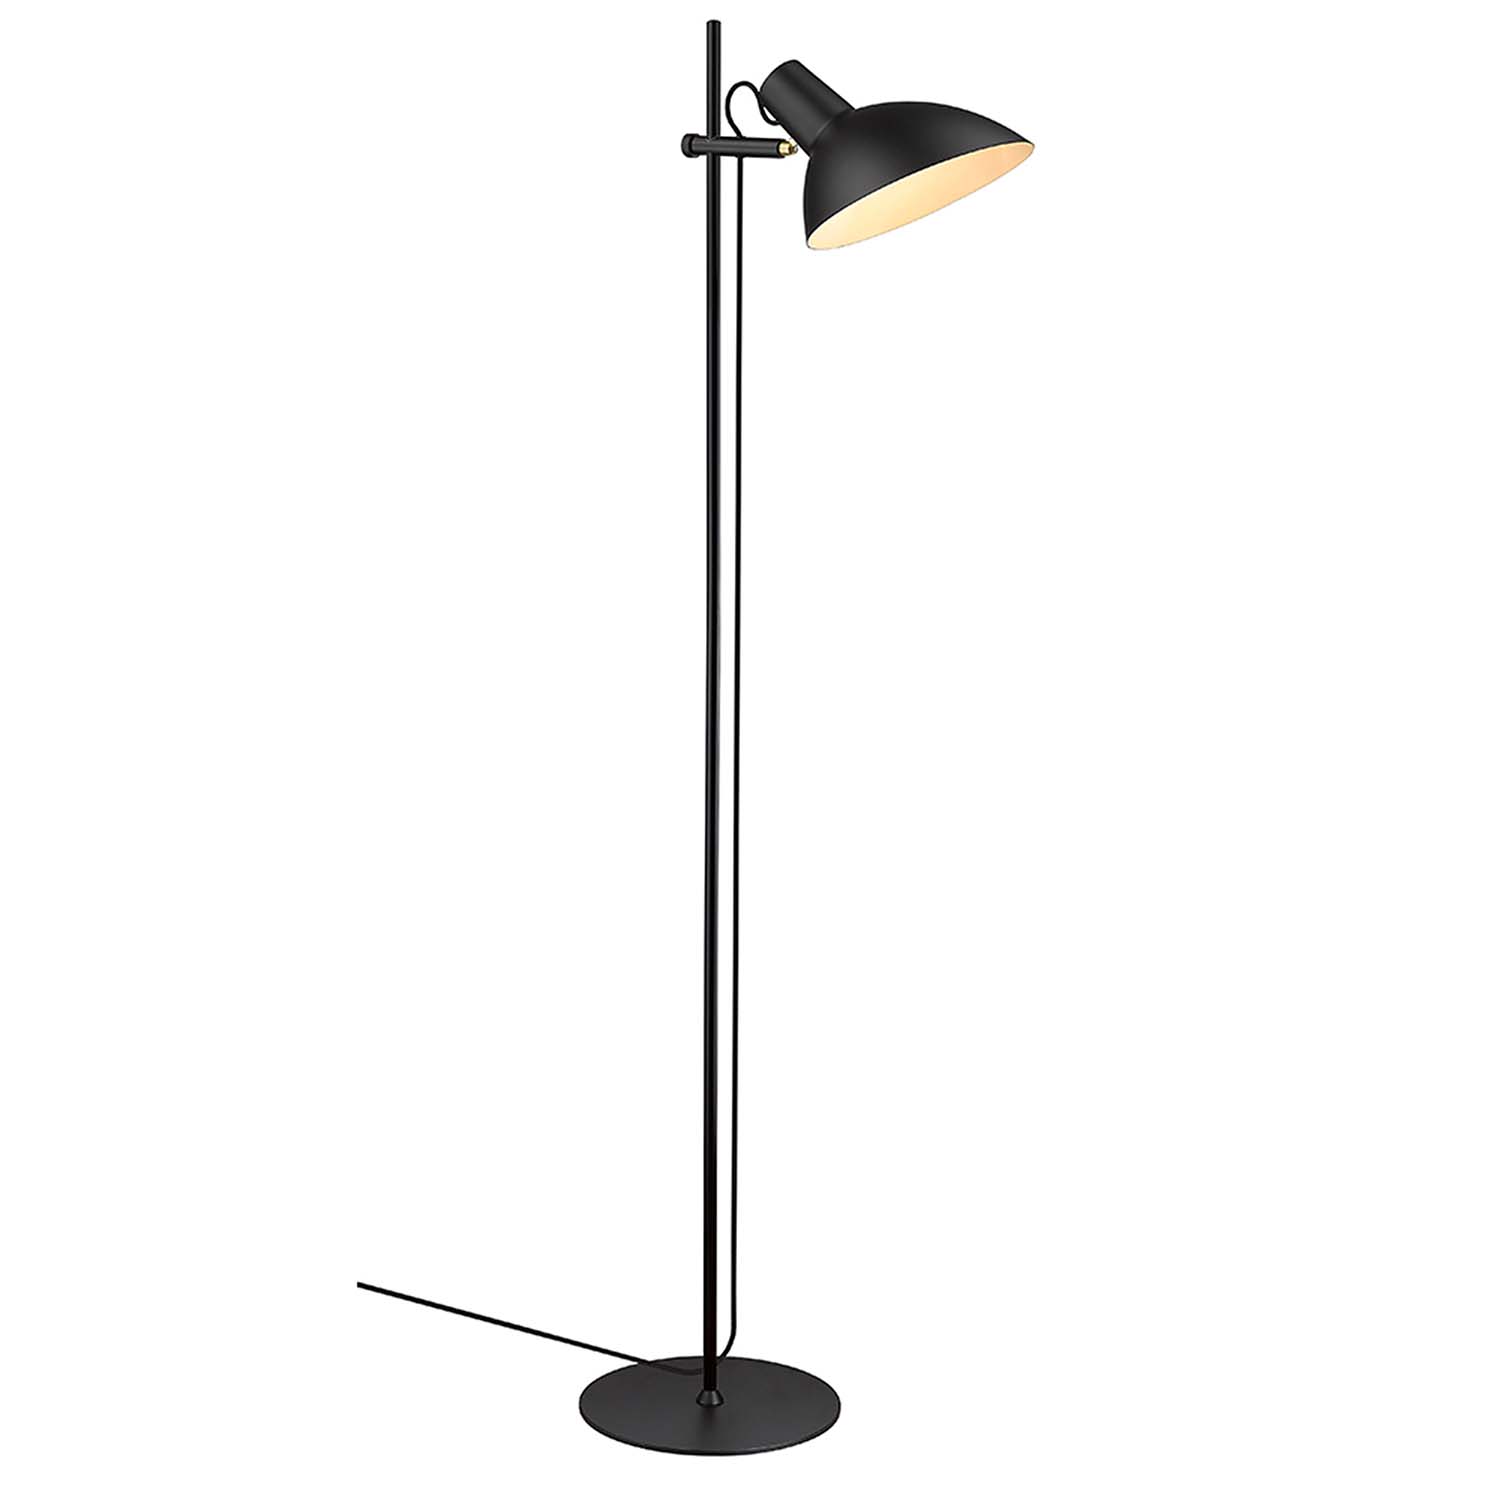 METROPOLE - Industrial floor lamp in black or gold metal